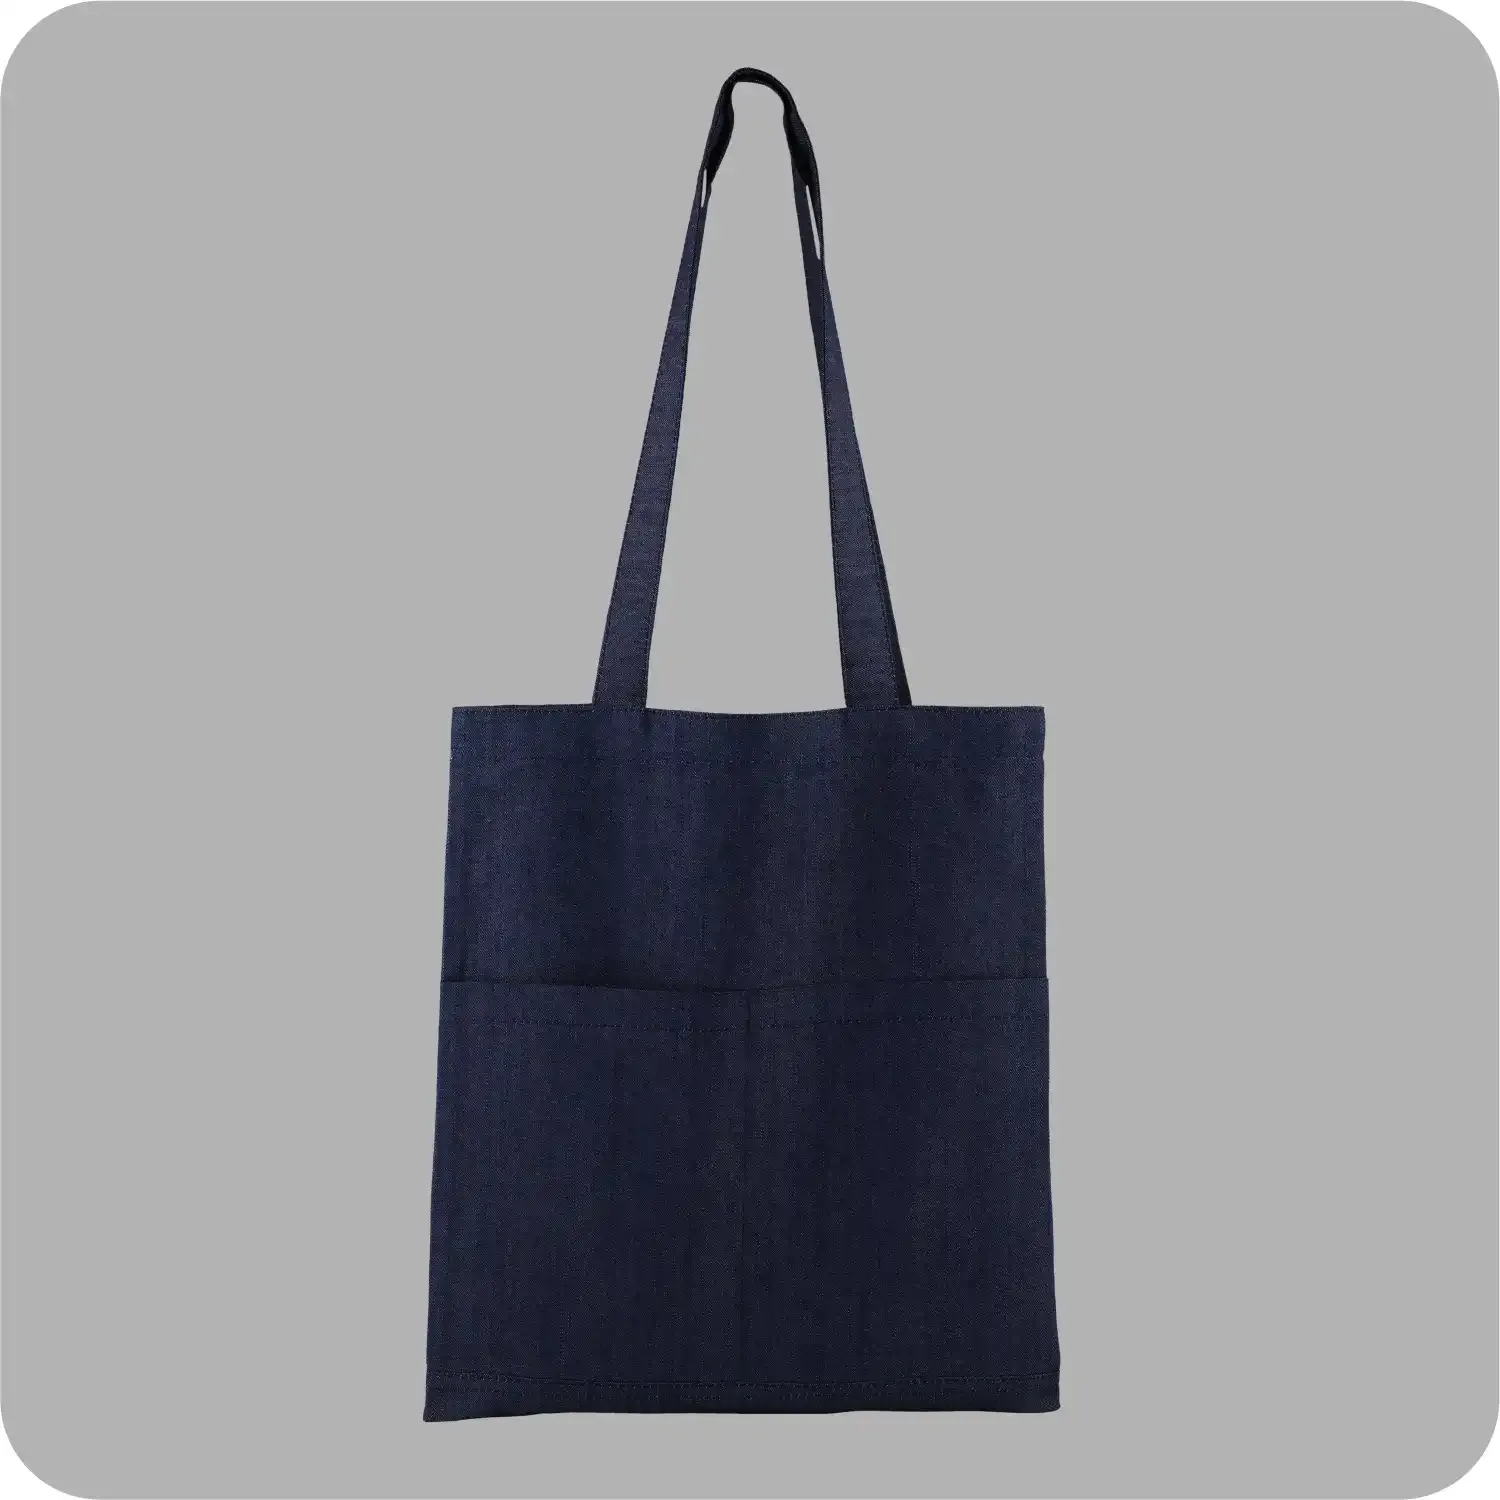 Denim Tote Bag Shopping Bag Promotional Bag Conference Bag Institutional bag-06